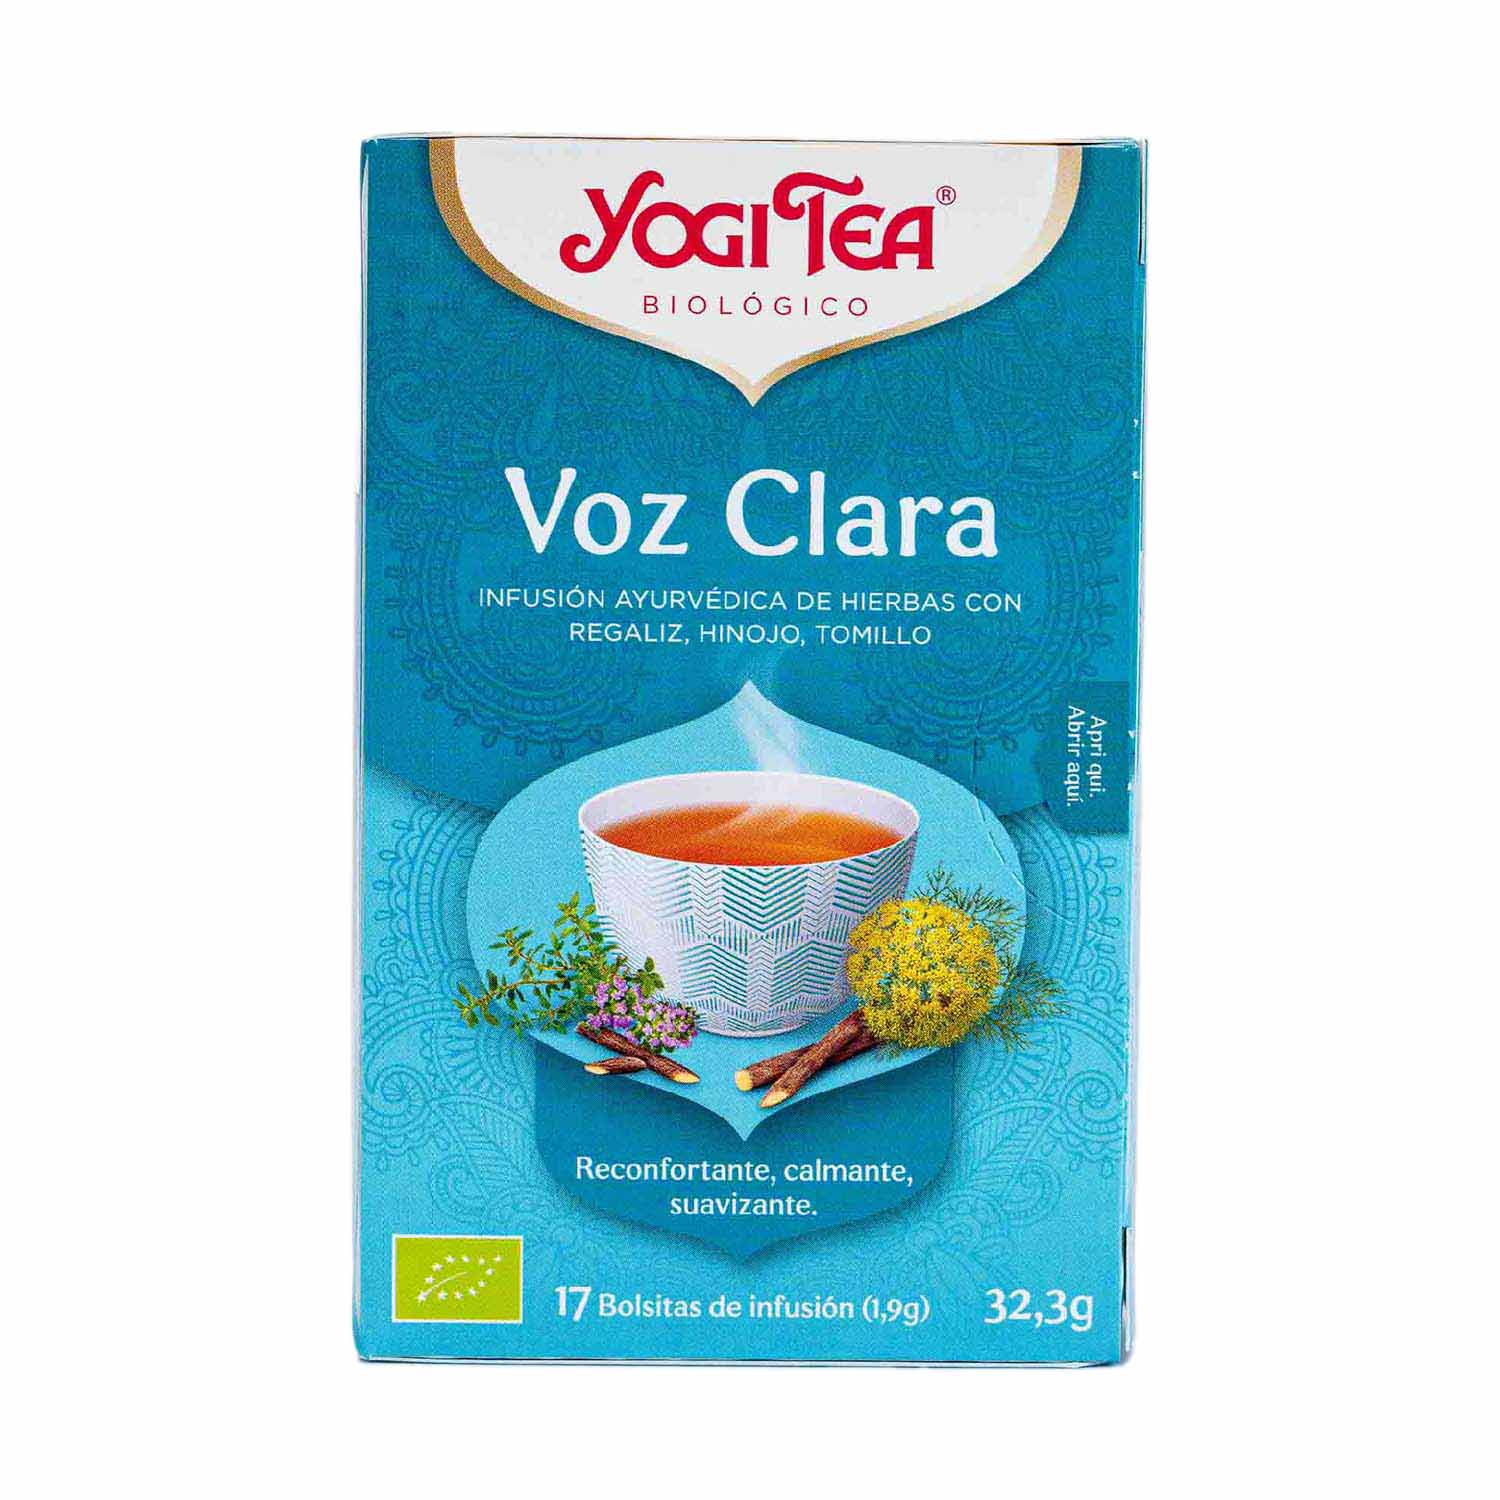 Comprar Filtros de Té Al Por Mayor - Granada Tea Company